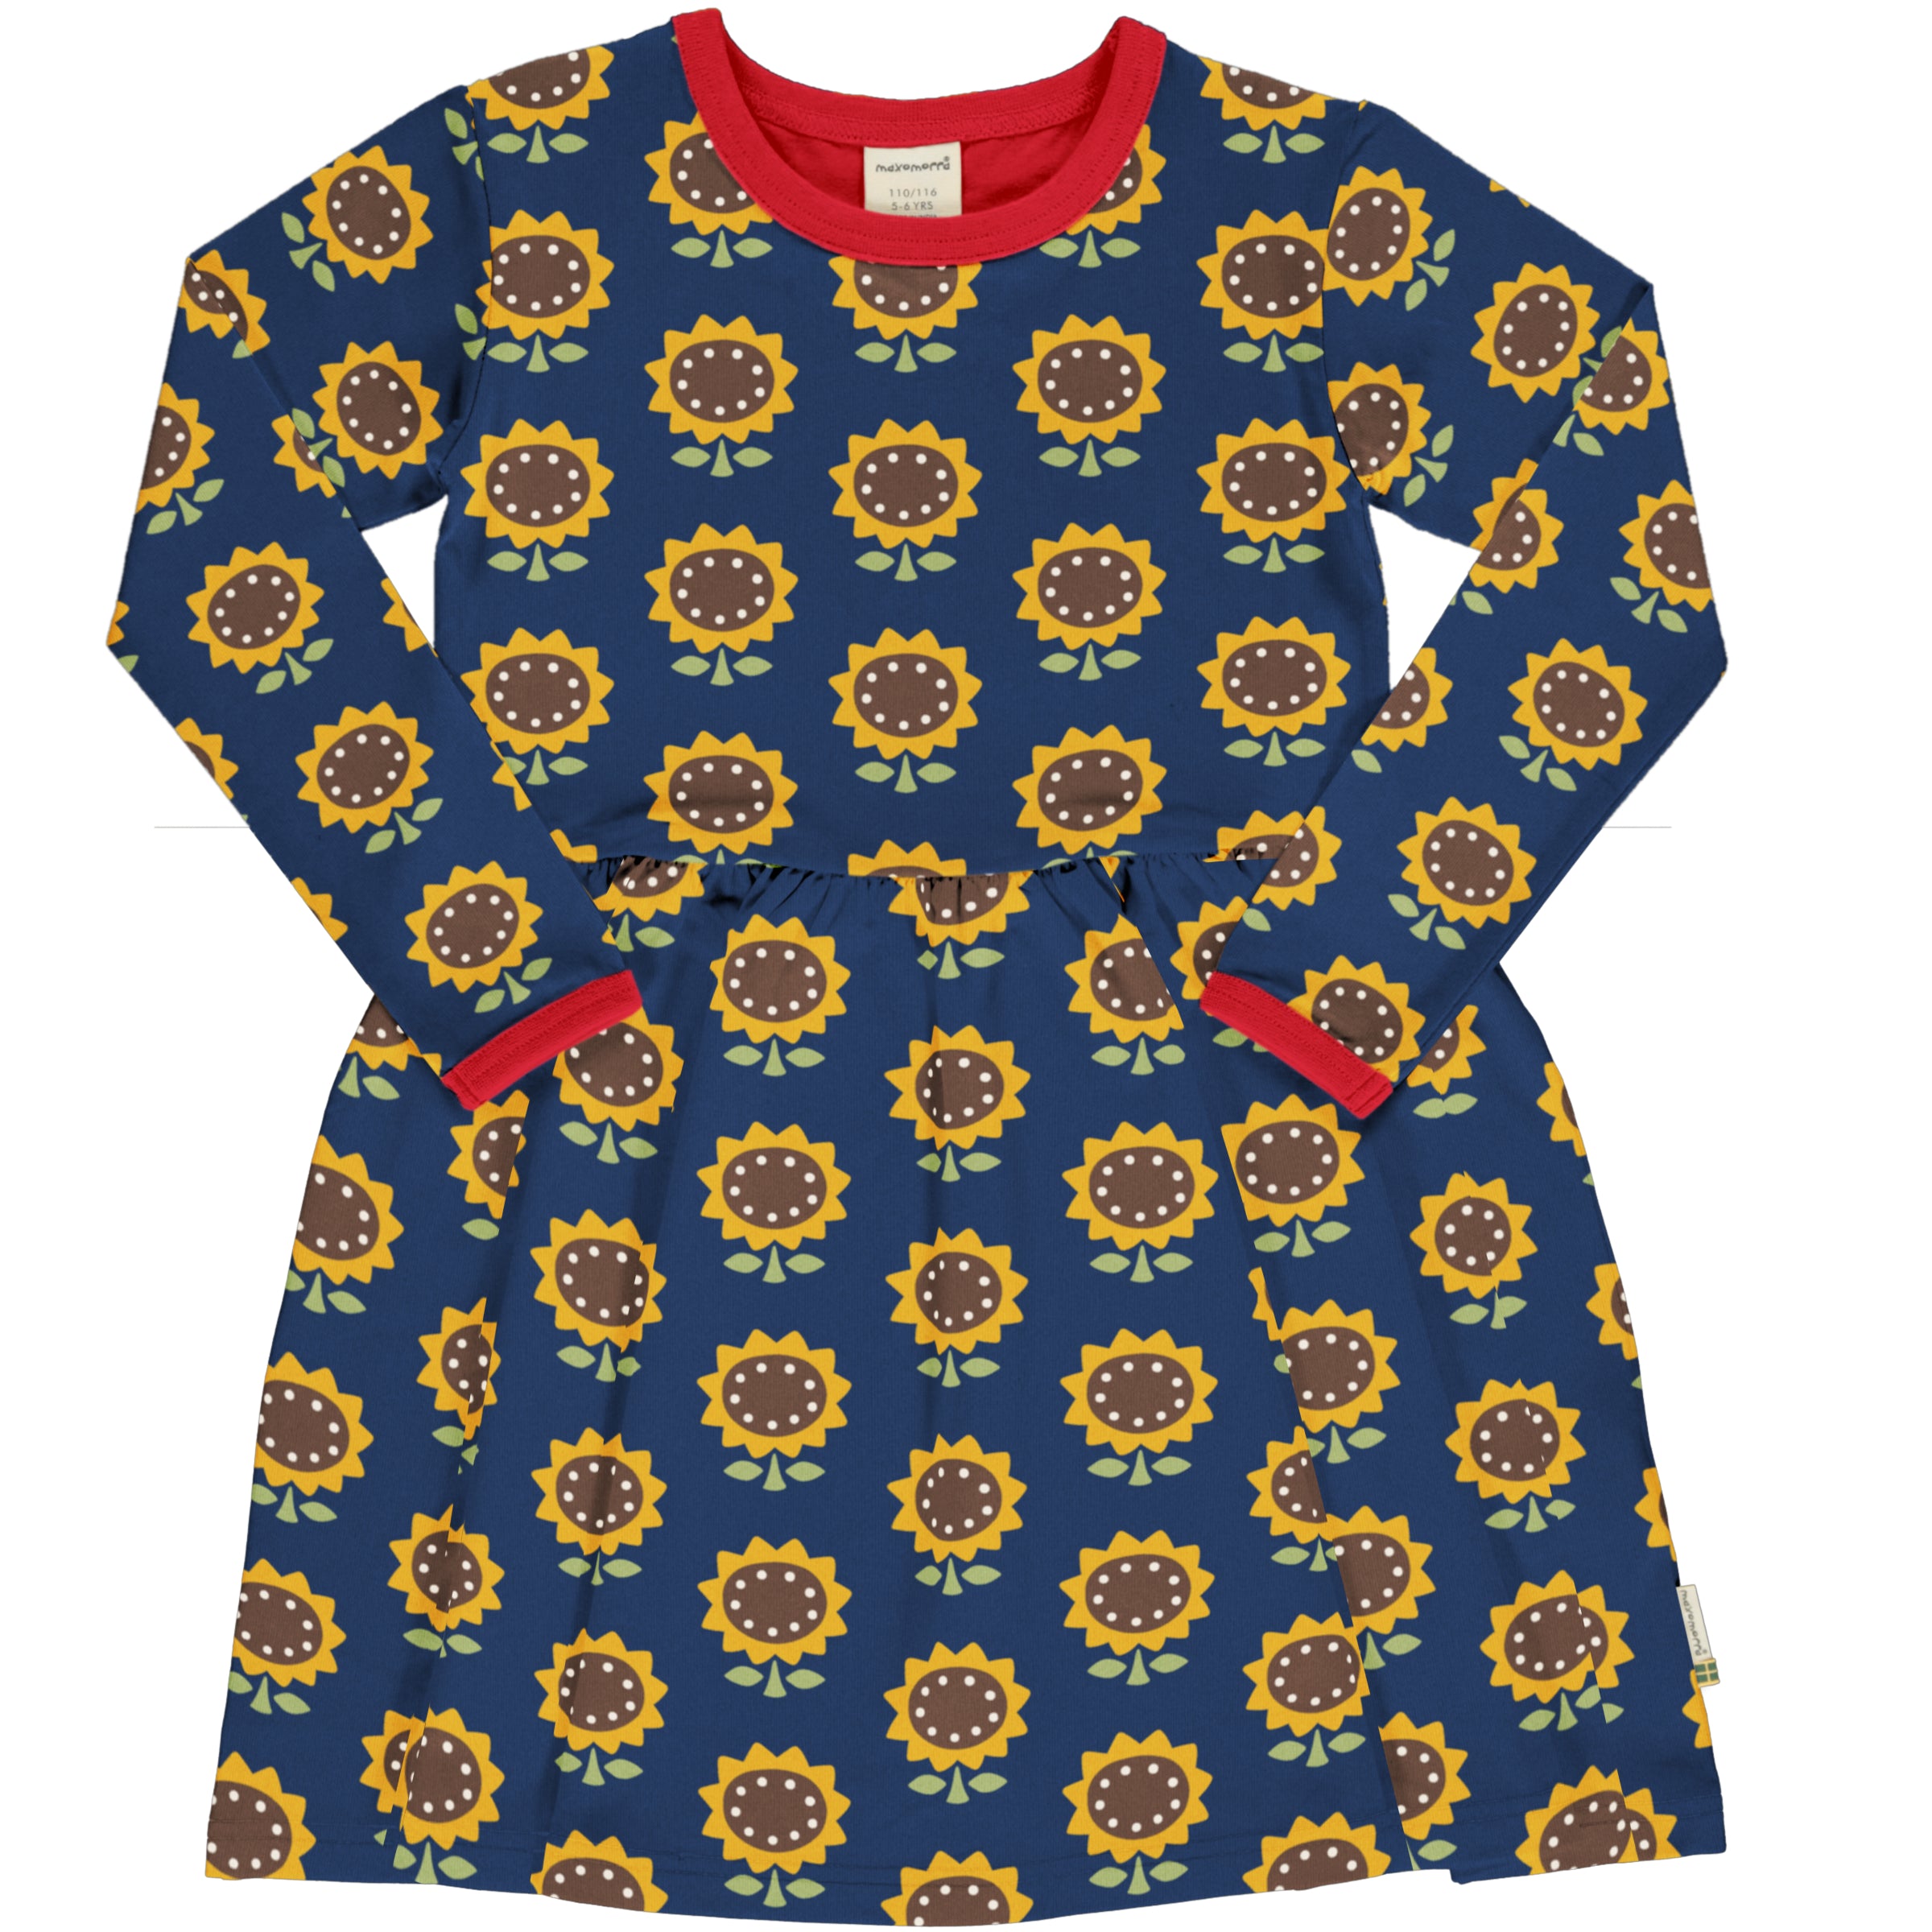 Maxomorra Dress Spin LS Sunflower